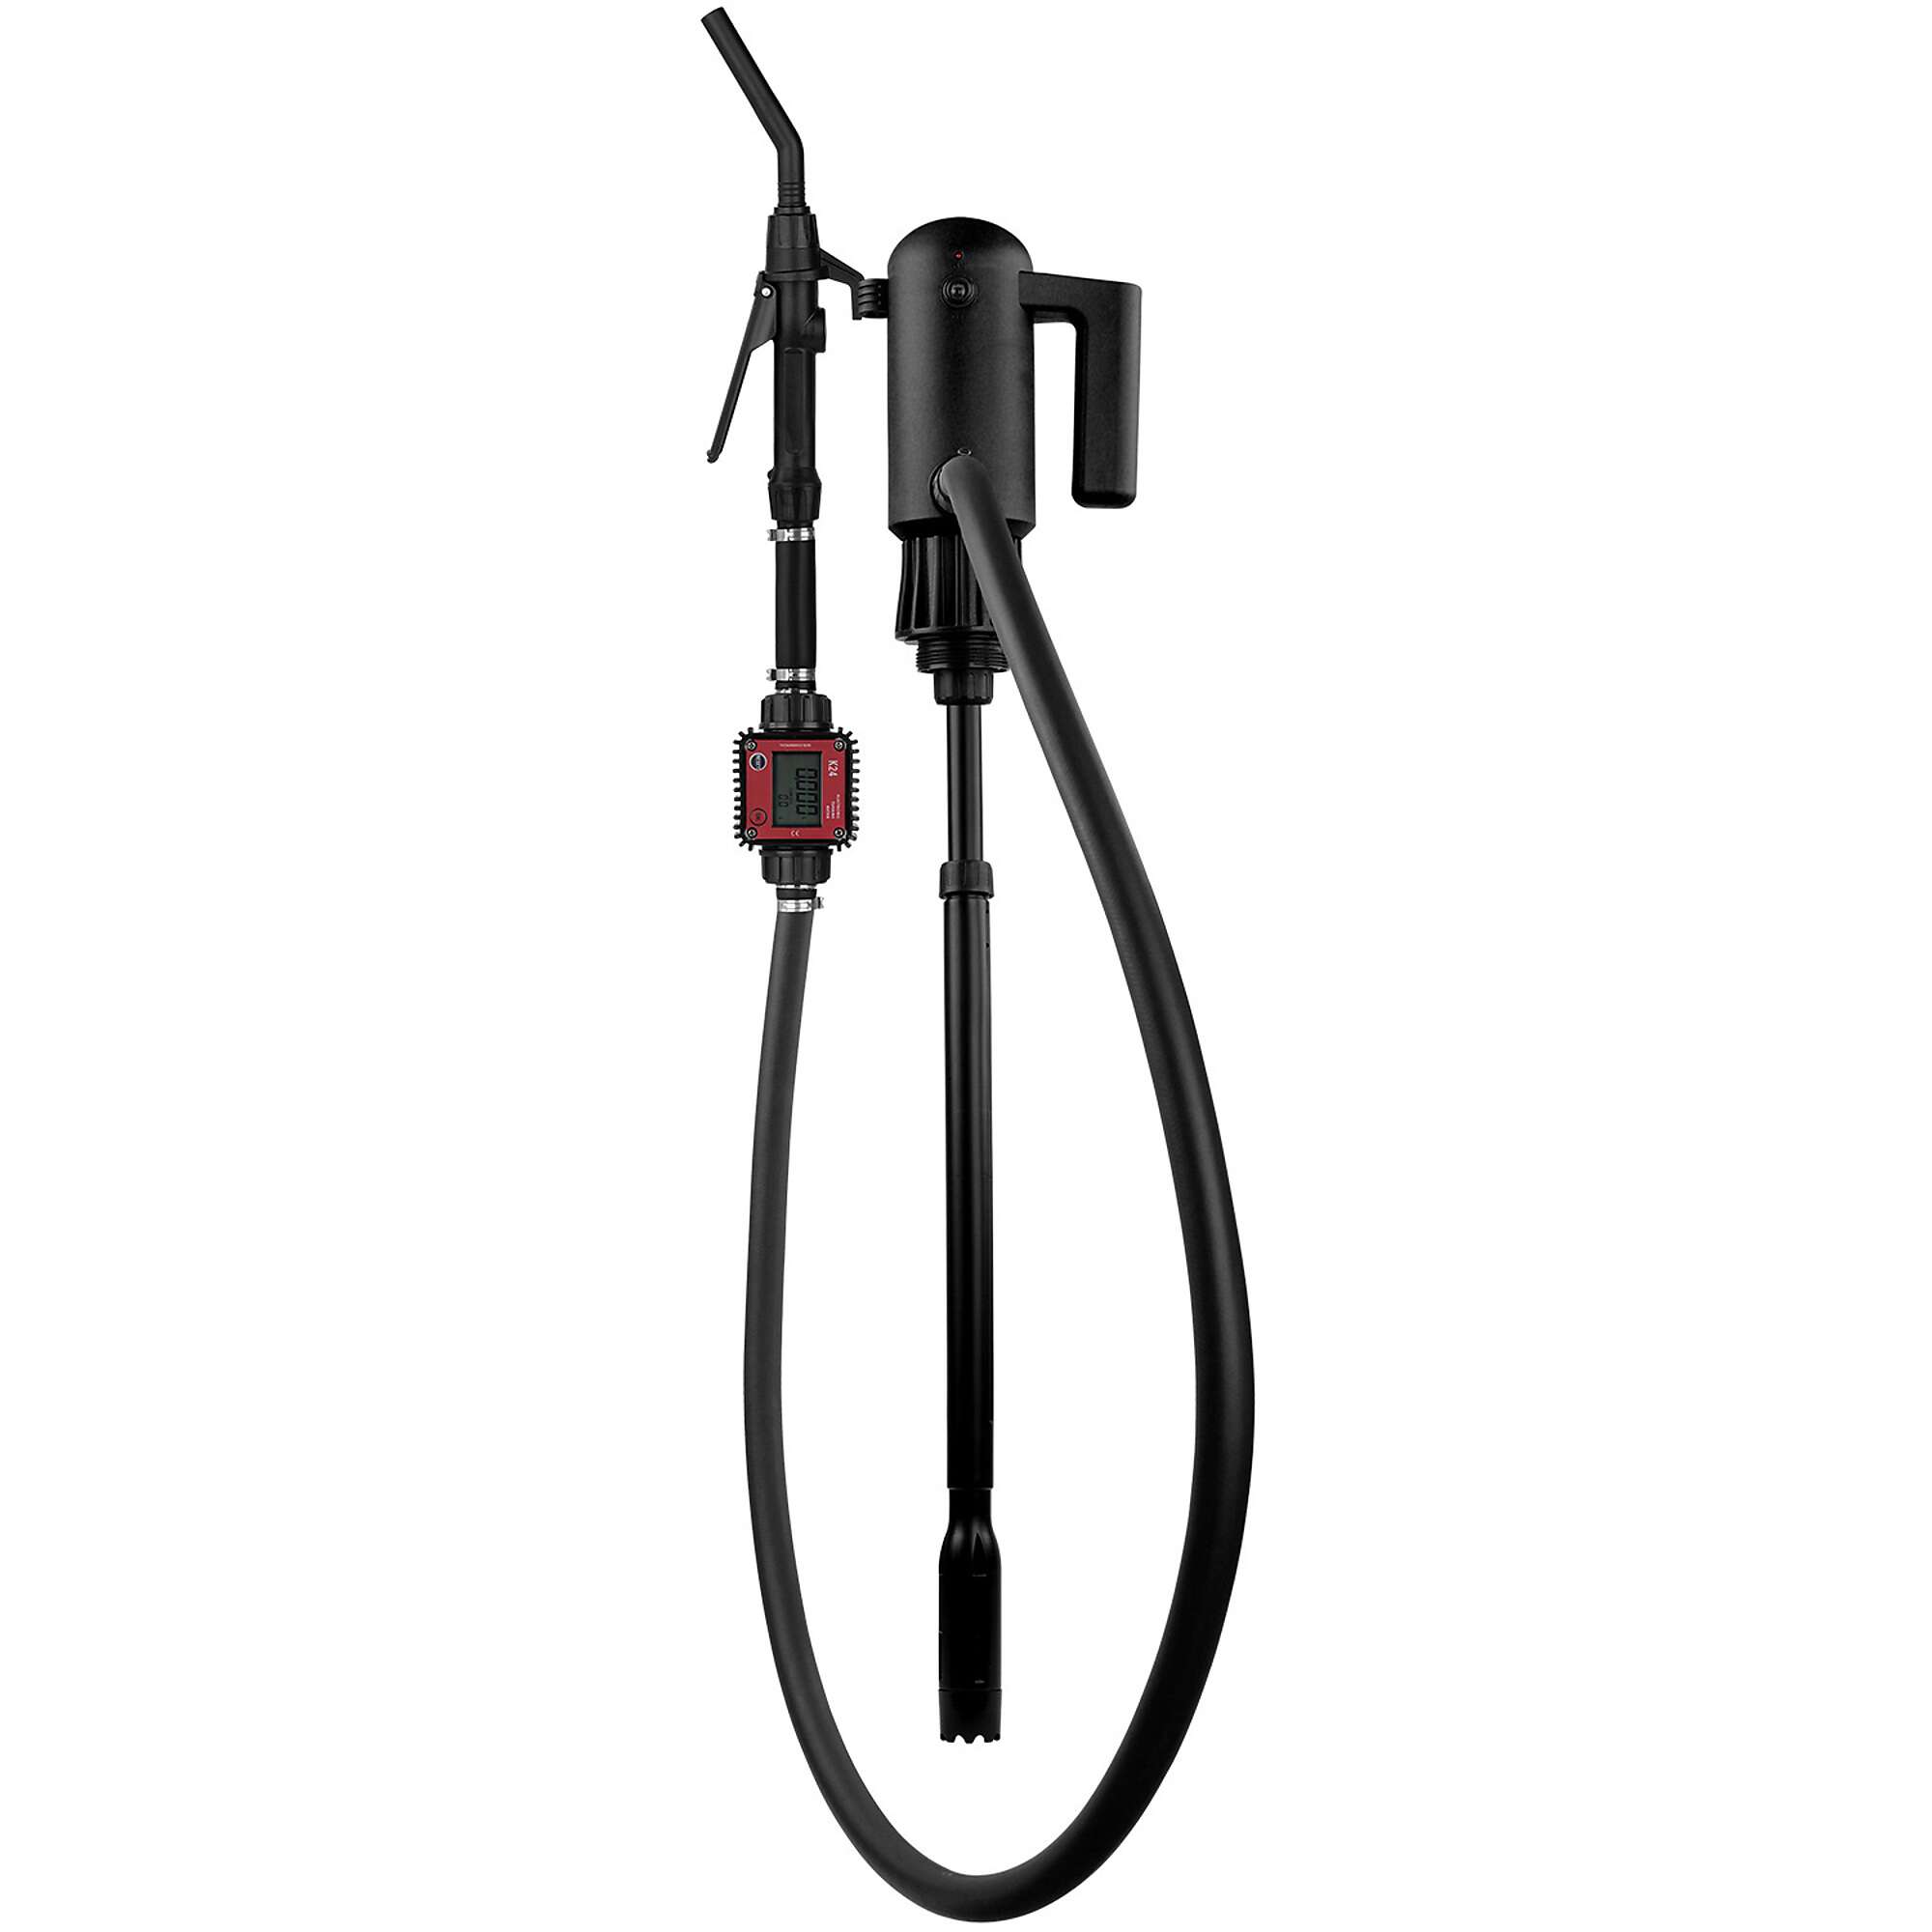 Roughneck 120V Fuel Transfer Pump — 22 GPM